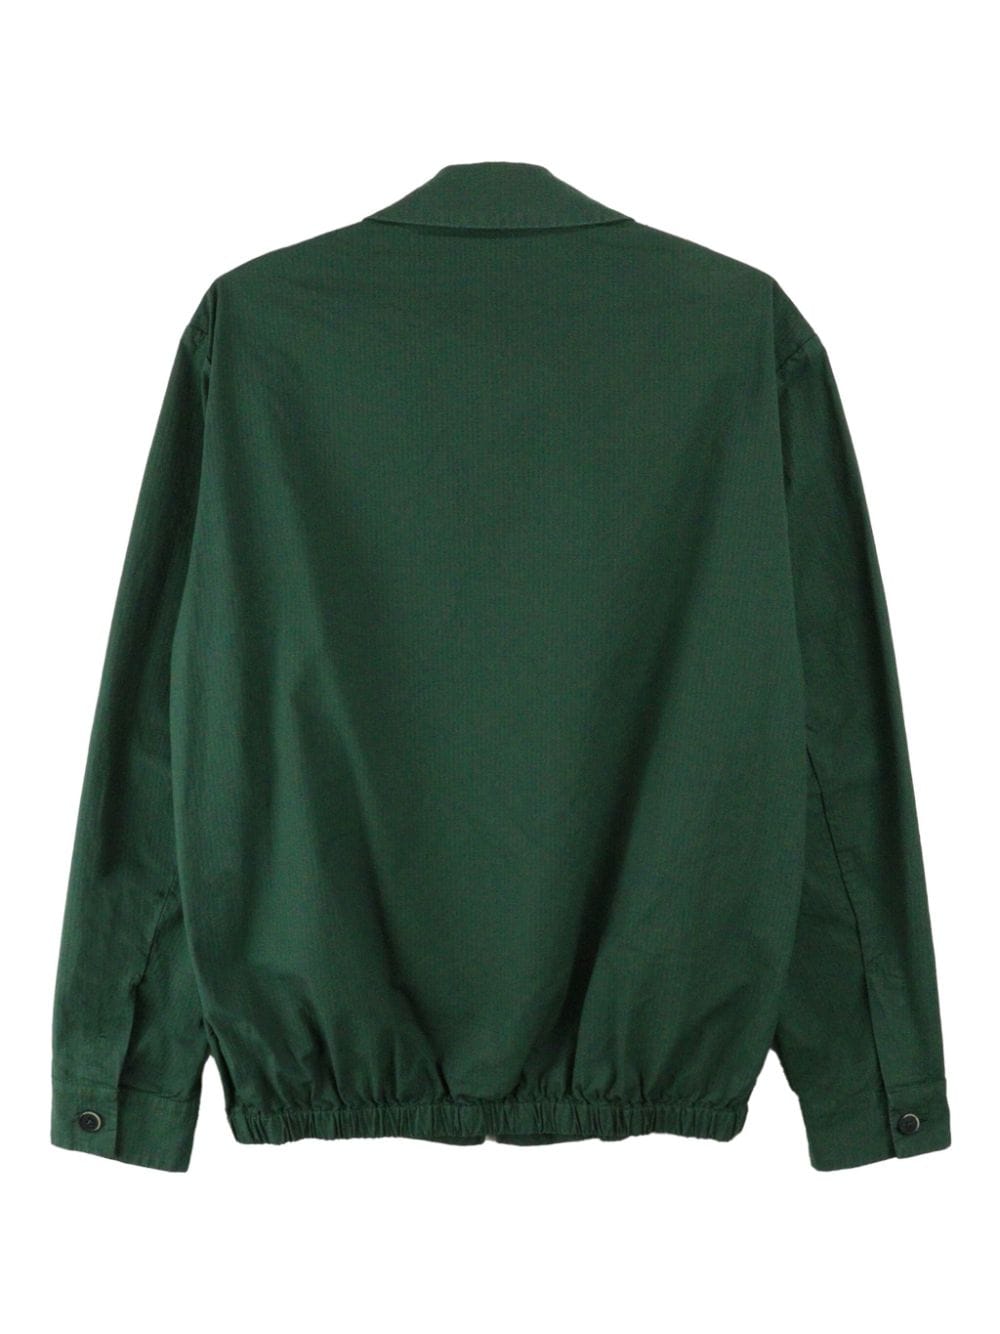 Barena Zaleto Mariol zip-up shirt jacket - Groen